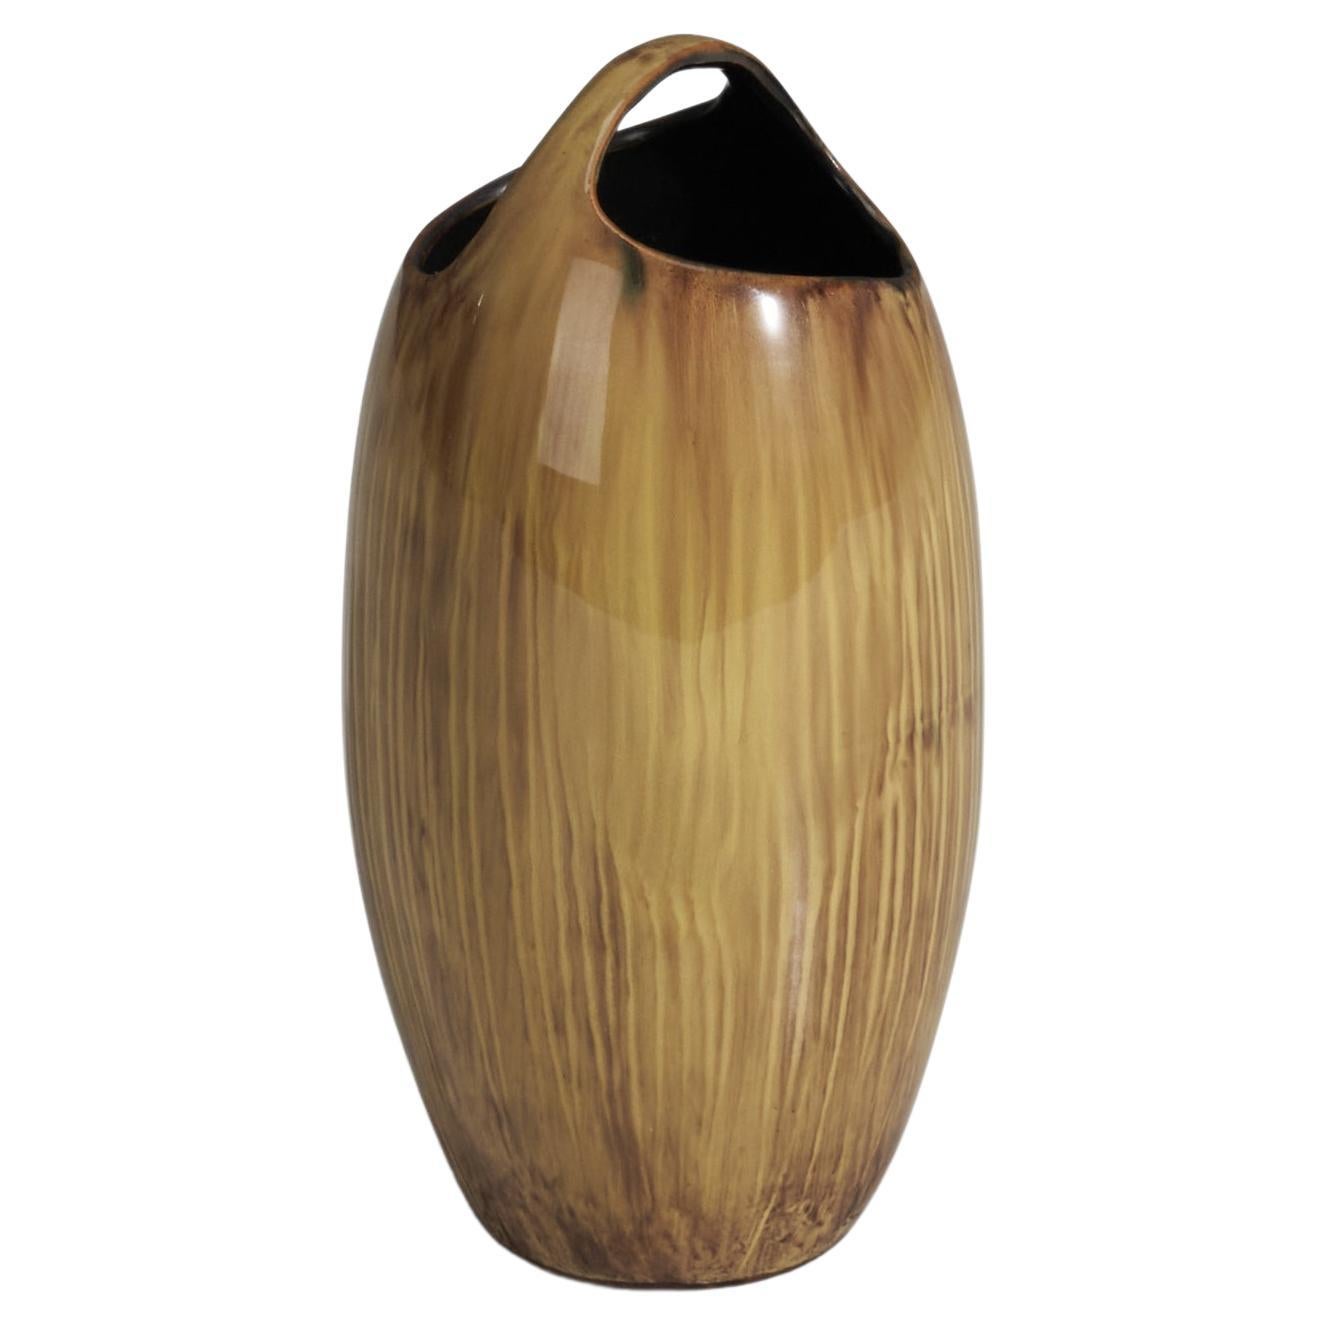  Vase de designer danois, grès émaillé brun clair, Danemark, 1970